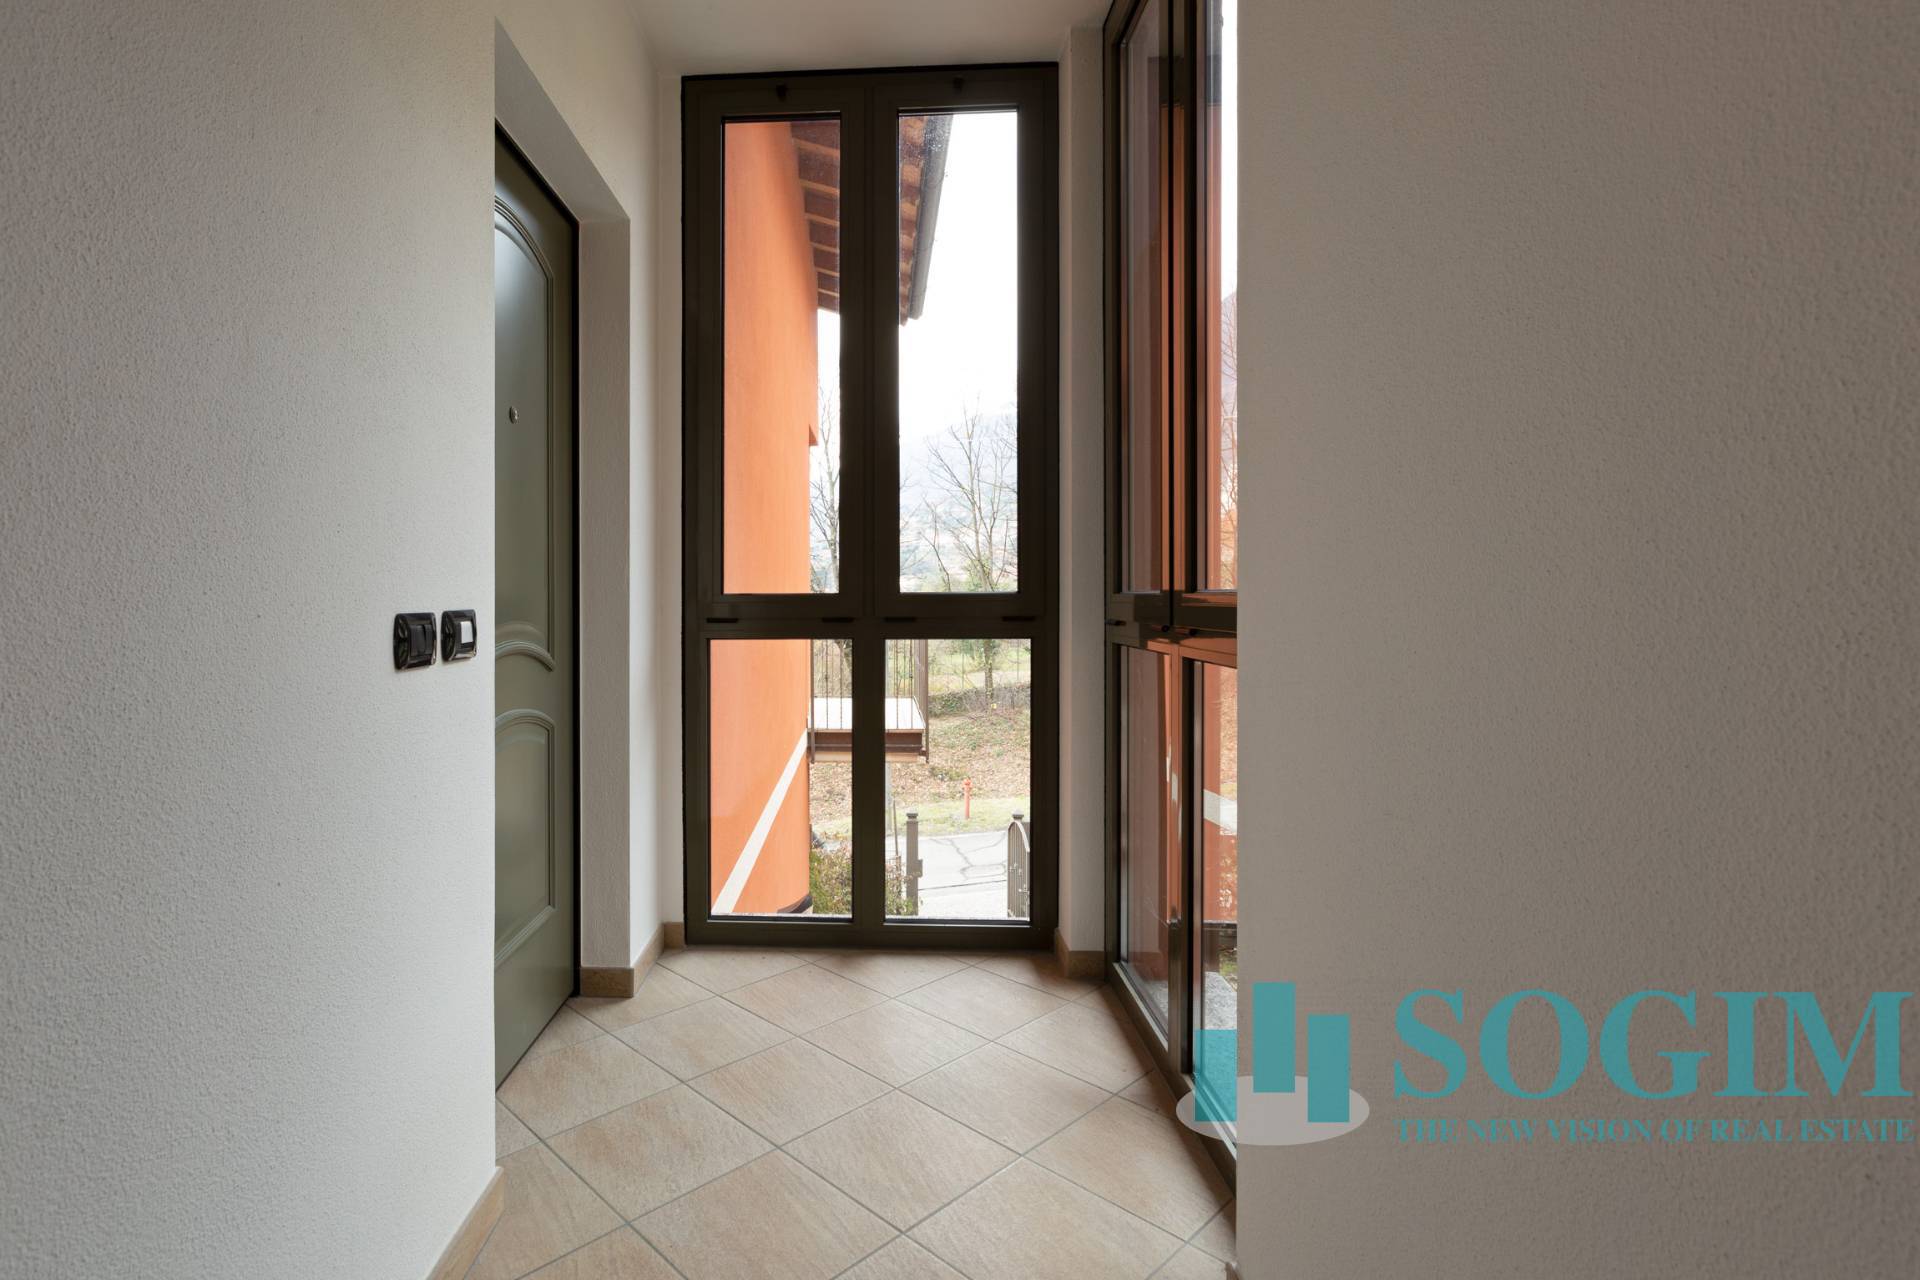 Appartamento in vendita a Tremezzina, 4 locali, prezzo € 420.000 | PortaleAgenzieImmobiliari.it